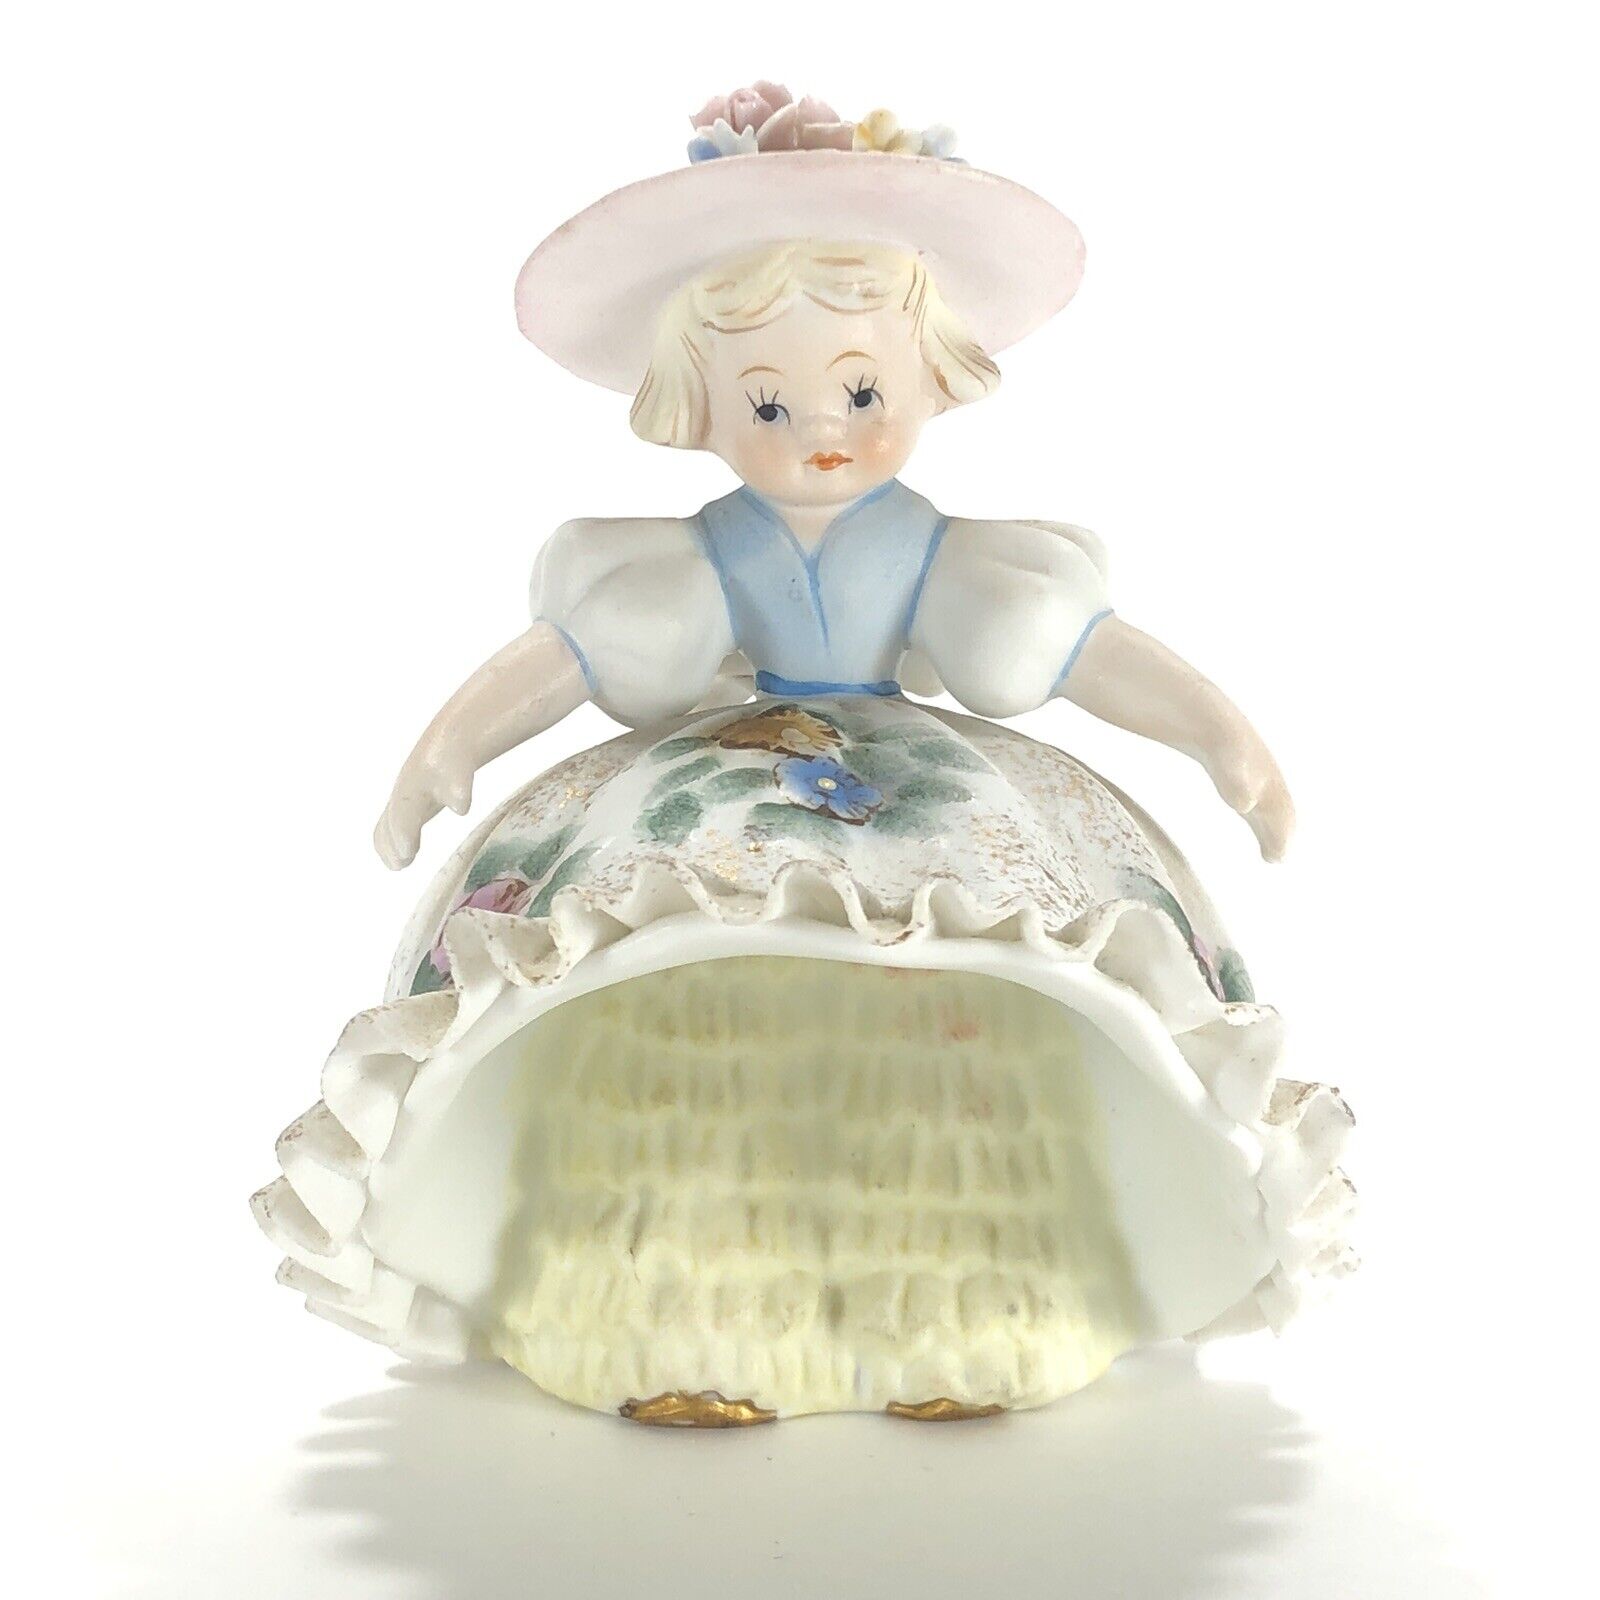 Vintage Lefton Porcelain Bloomer Girl Figurine KW1702 3.5-in High